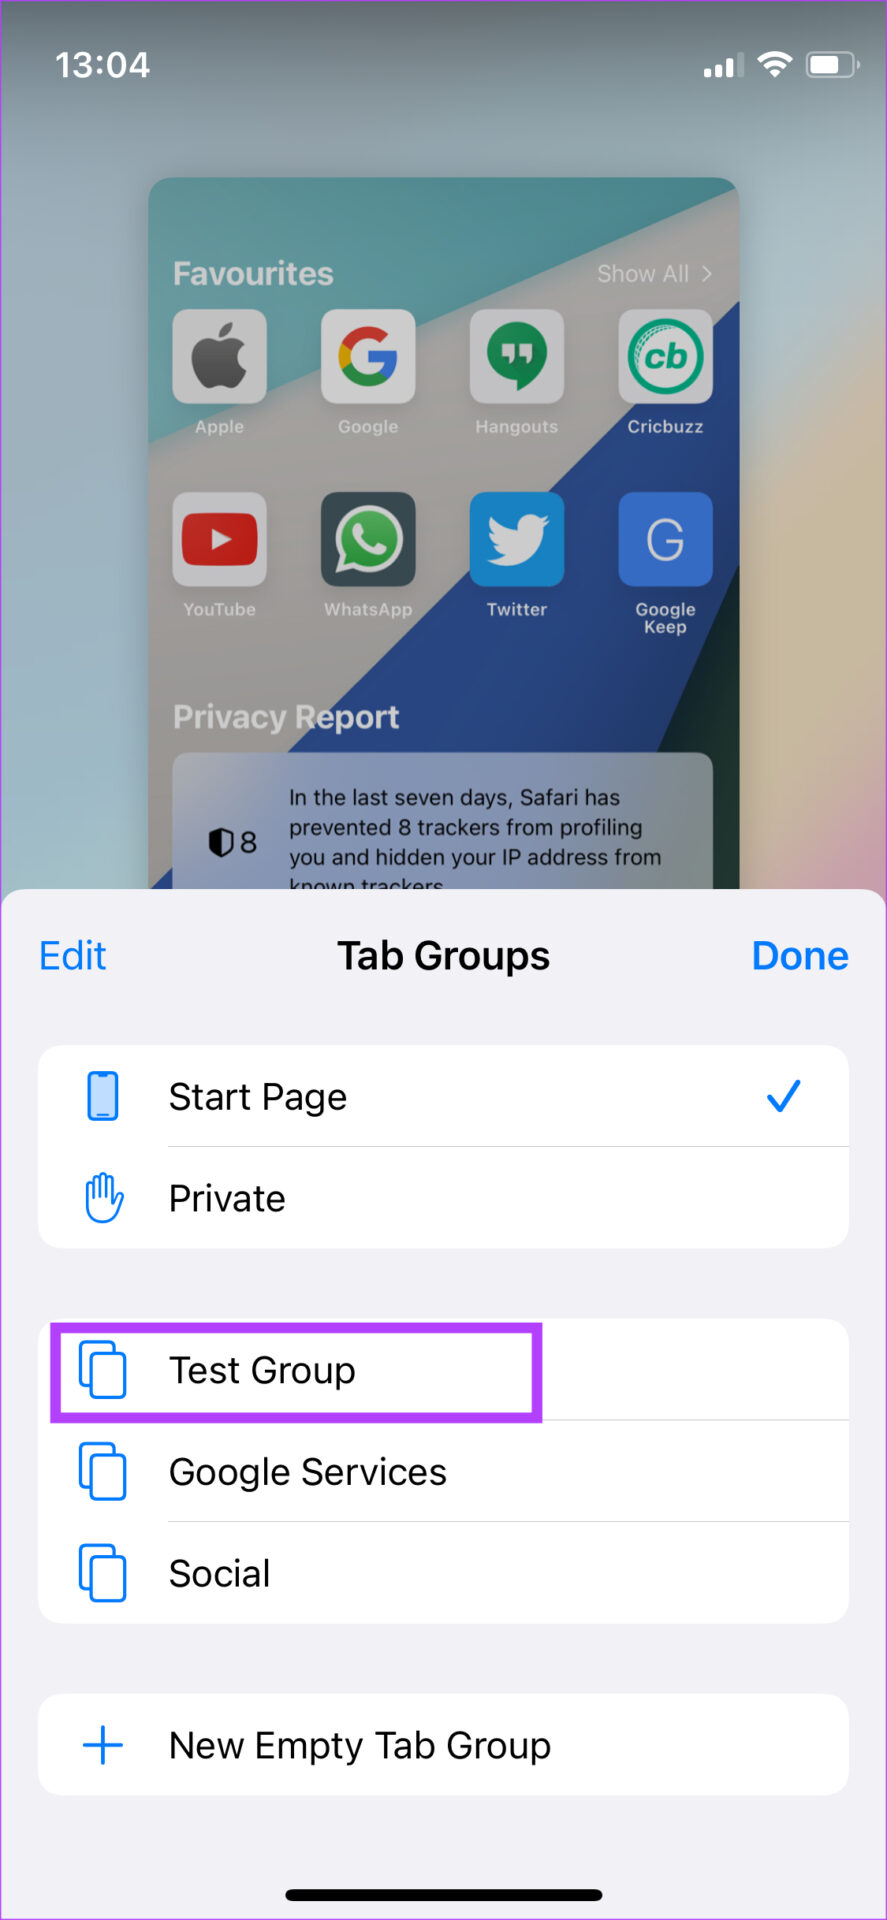 Select tab group